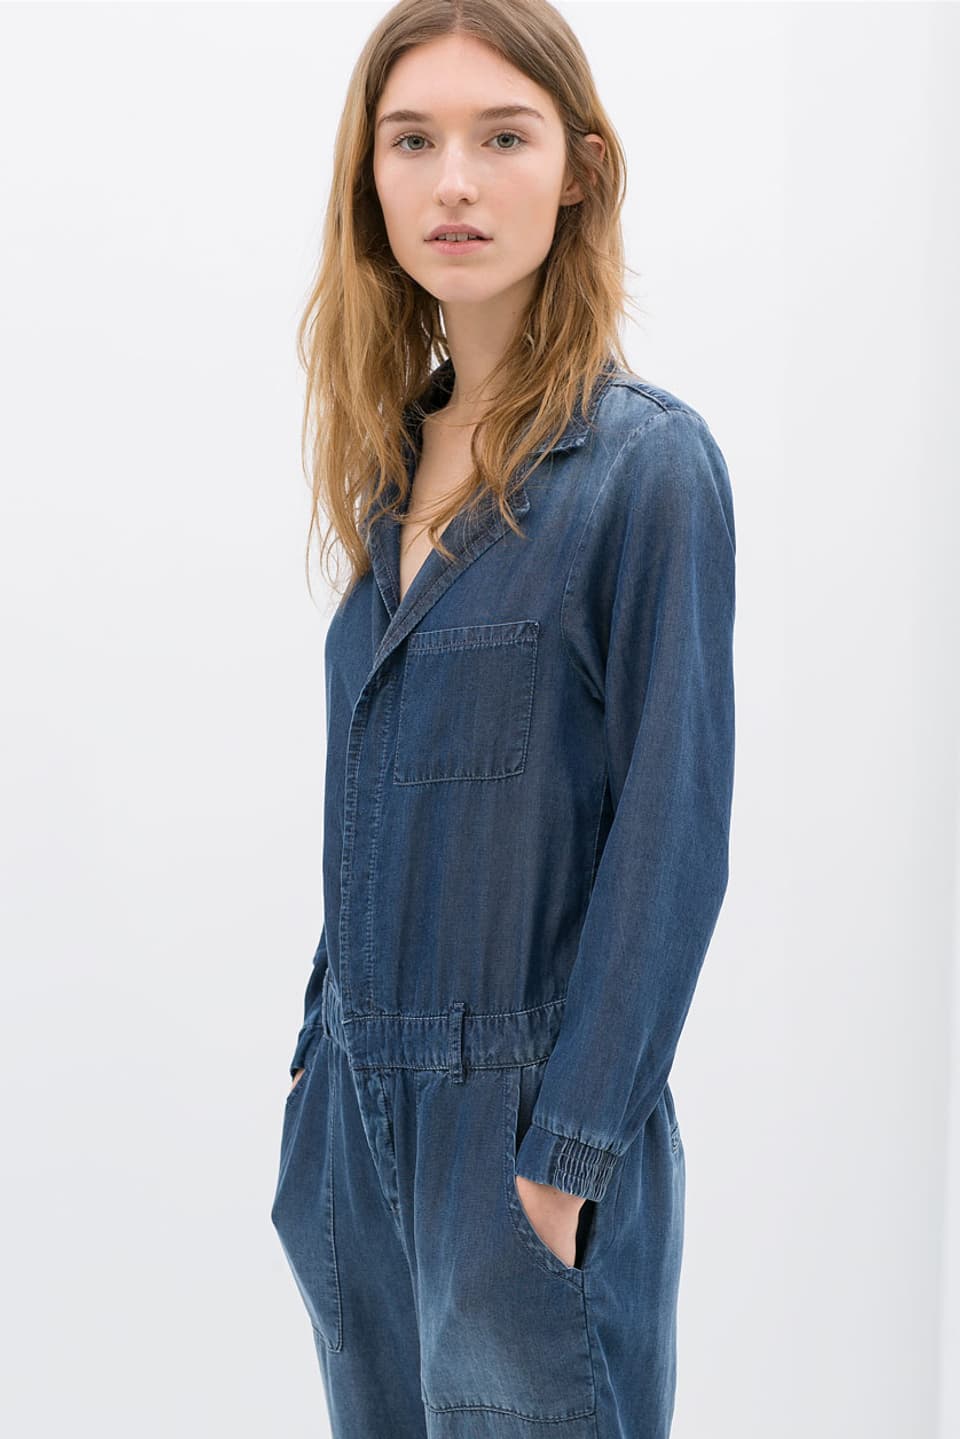 Manuela Frey in einem Jeans Overall